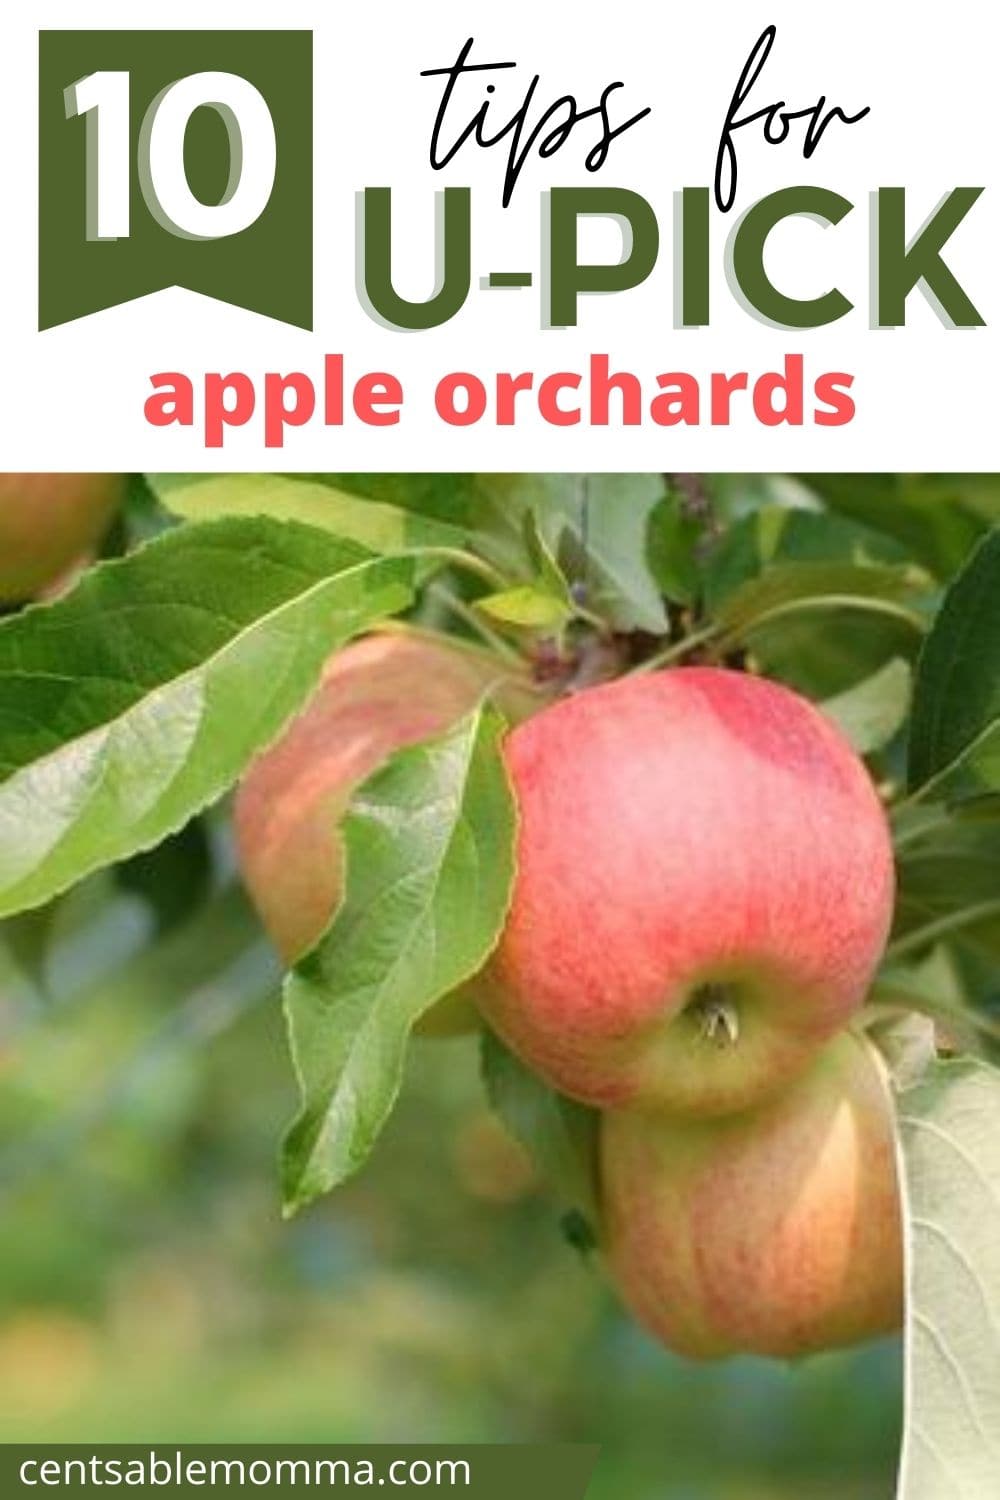 ripe apples on an apple tree